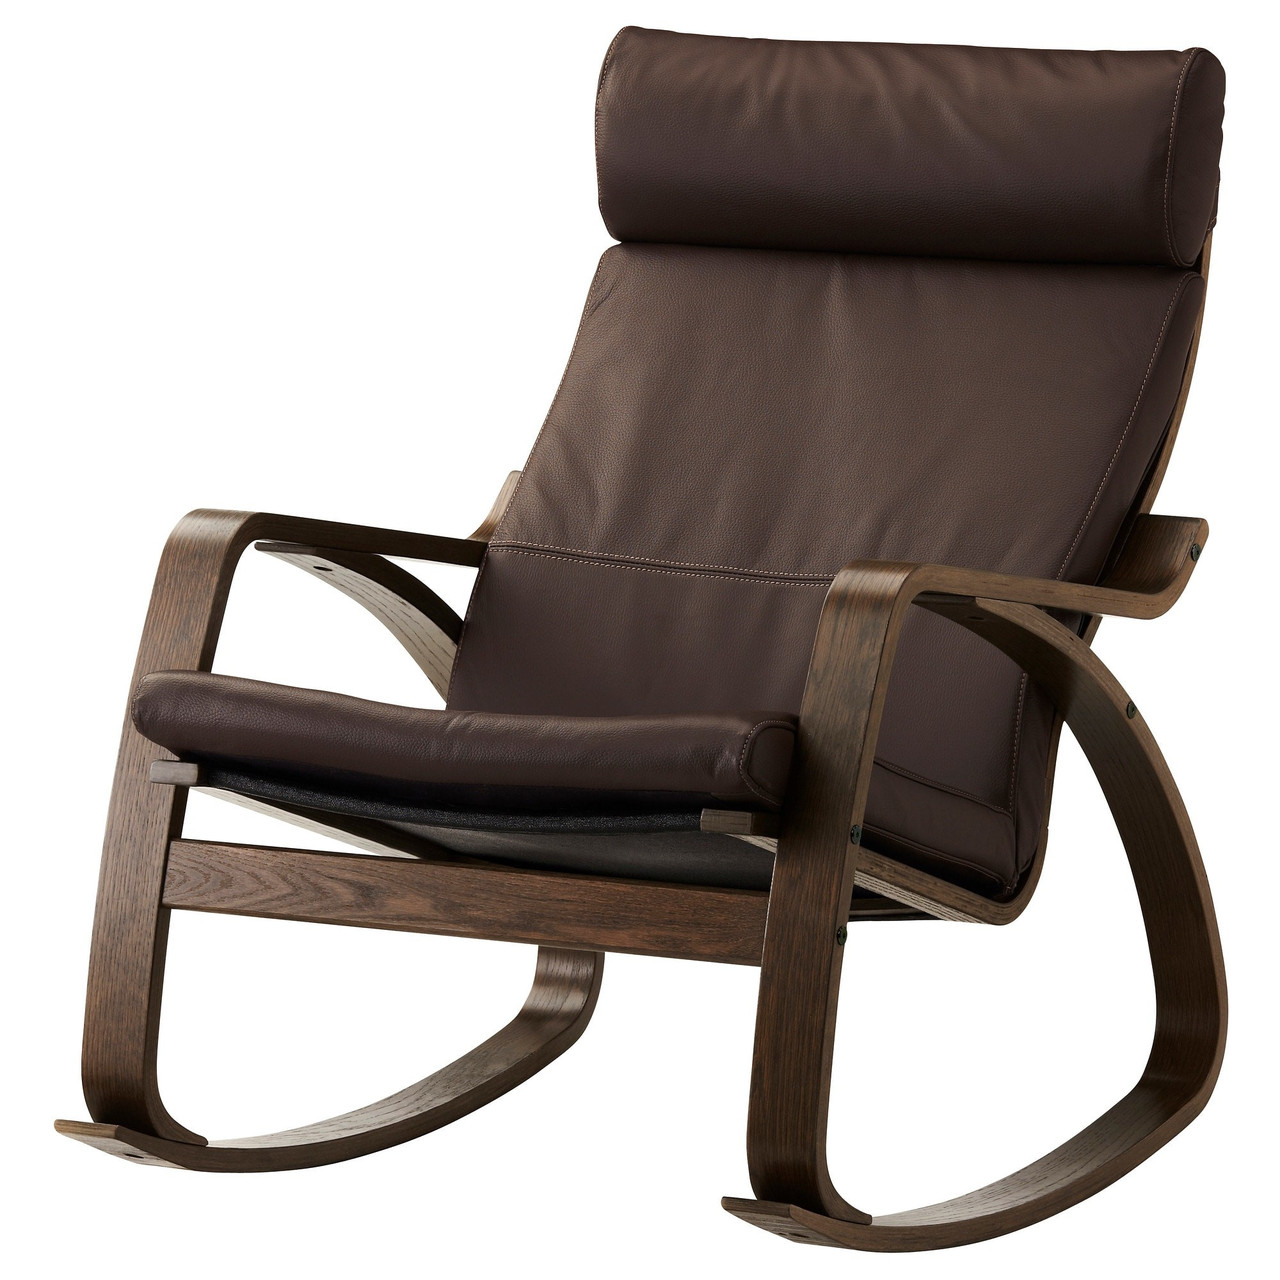 Кресло-качалка ПОЭНГ коричневый/Глосе темно-коричневый ИКЕА, IKEA